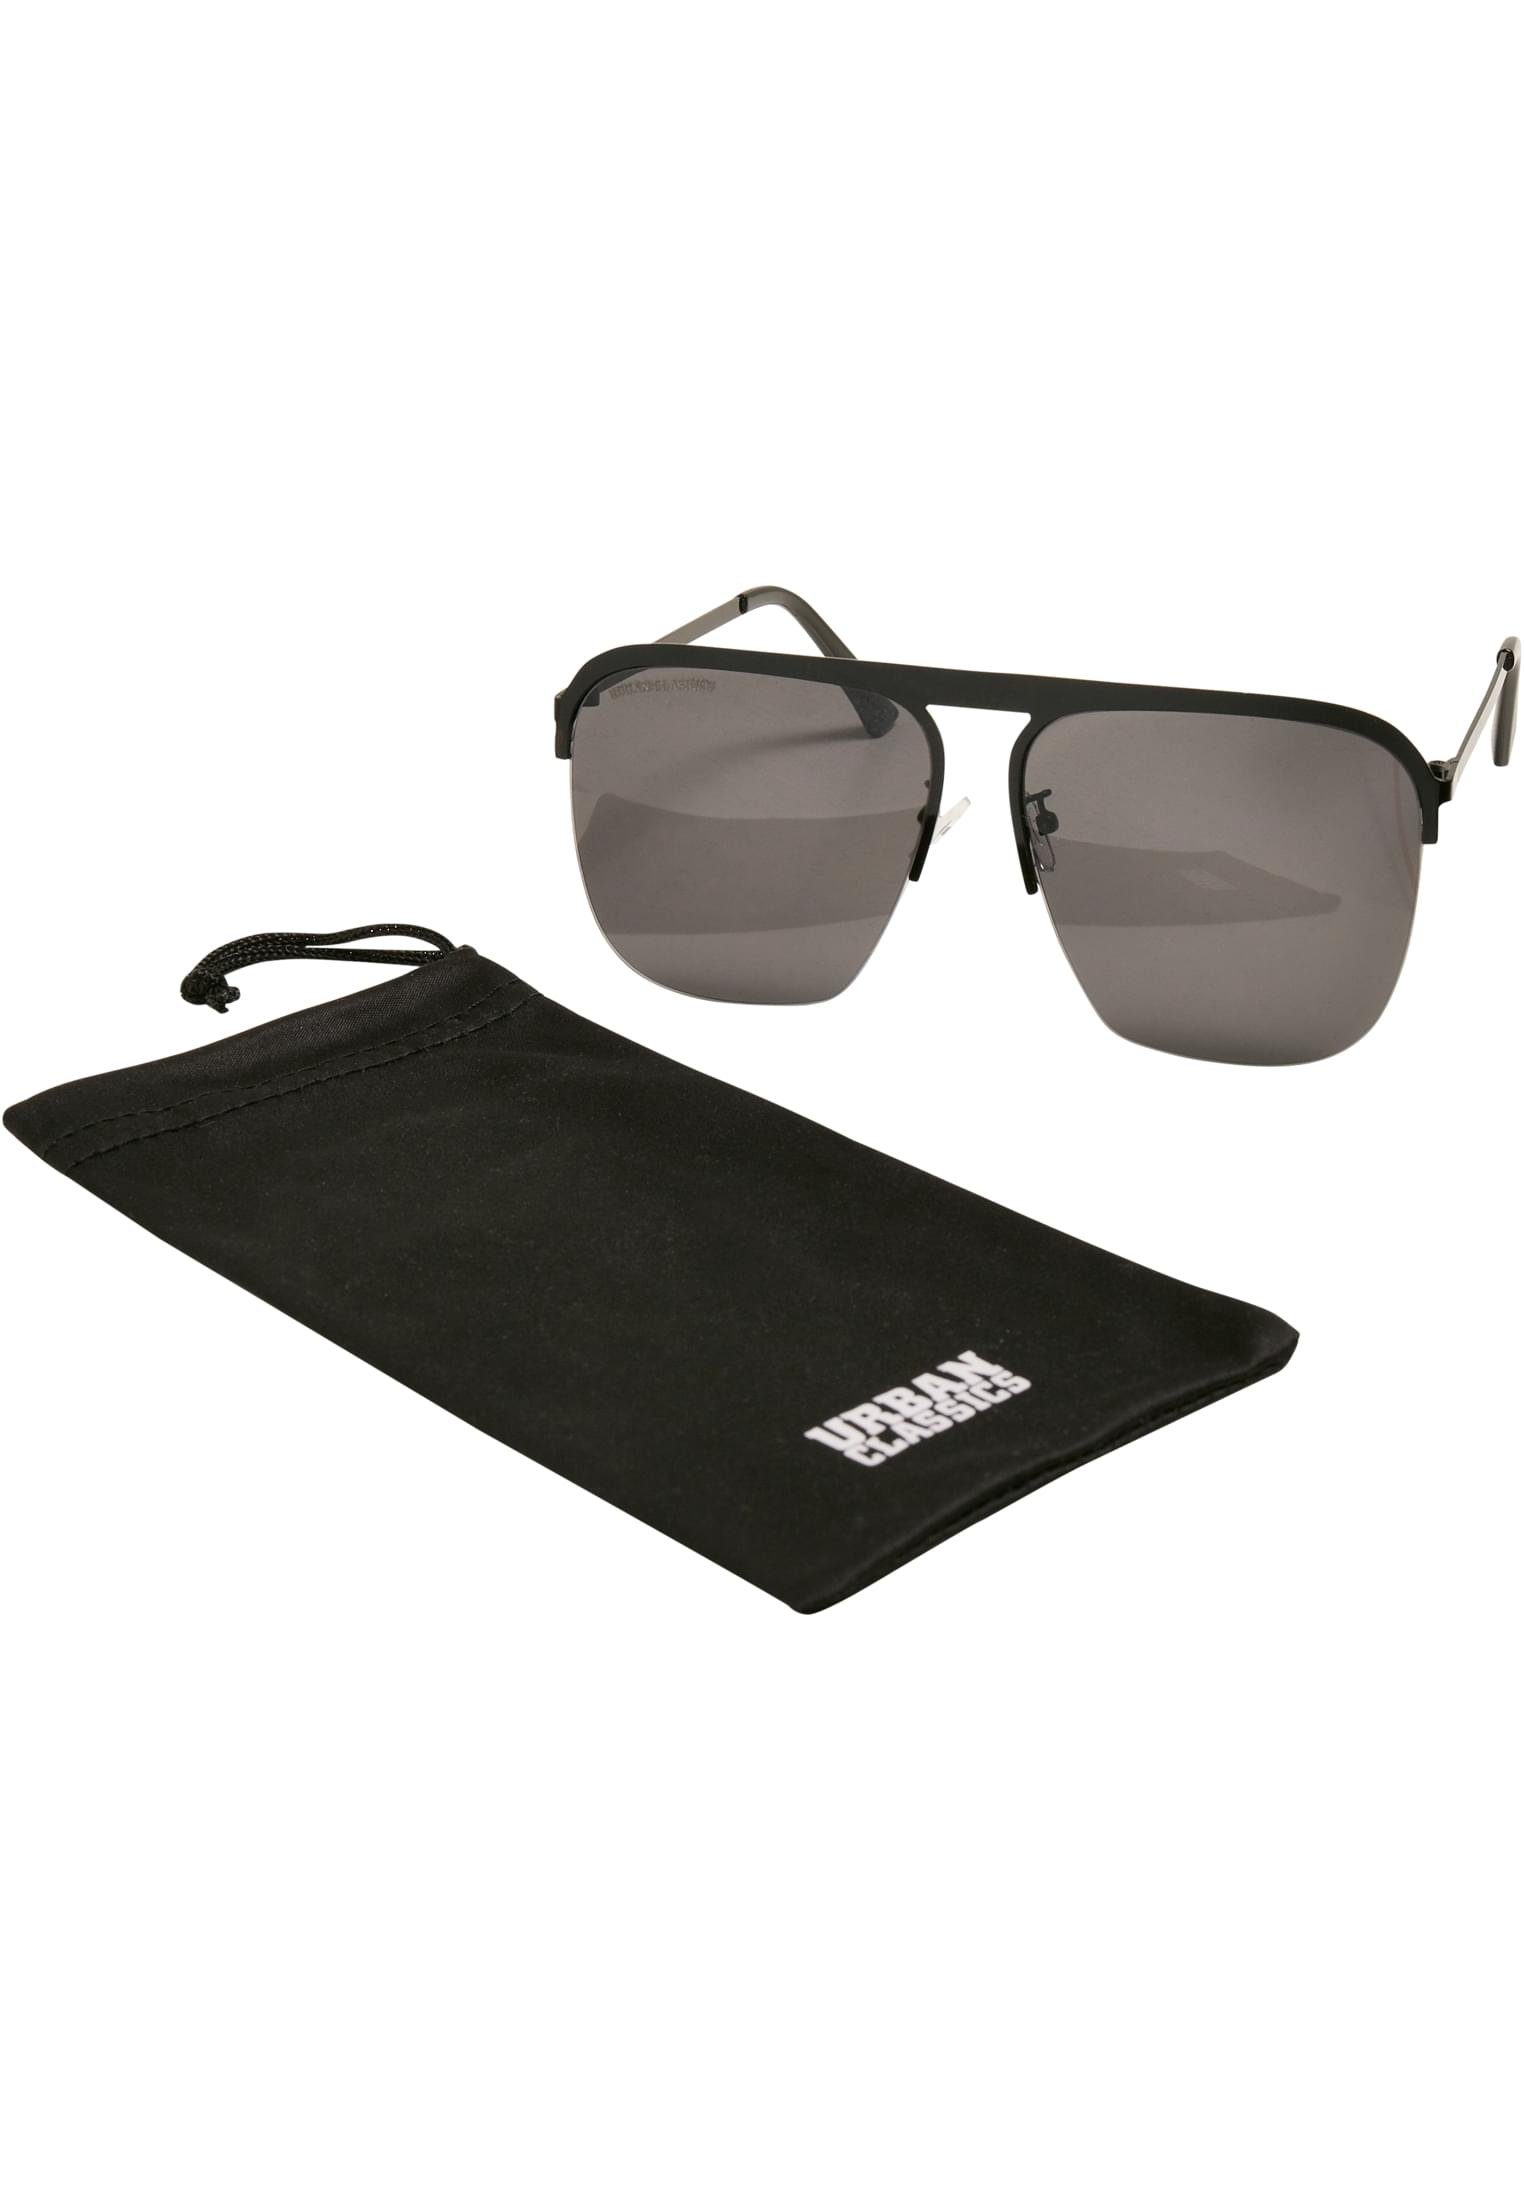 Sunglasses CLASSICS Unisex URBAN Sonnenbrille